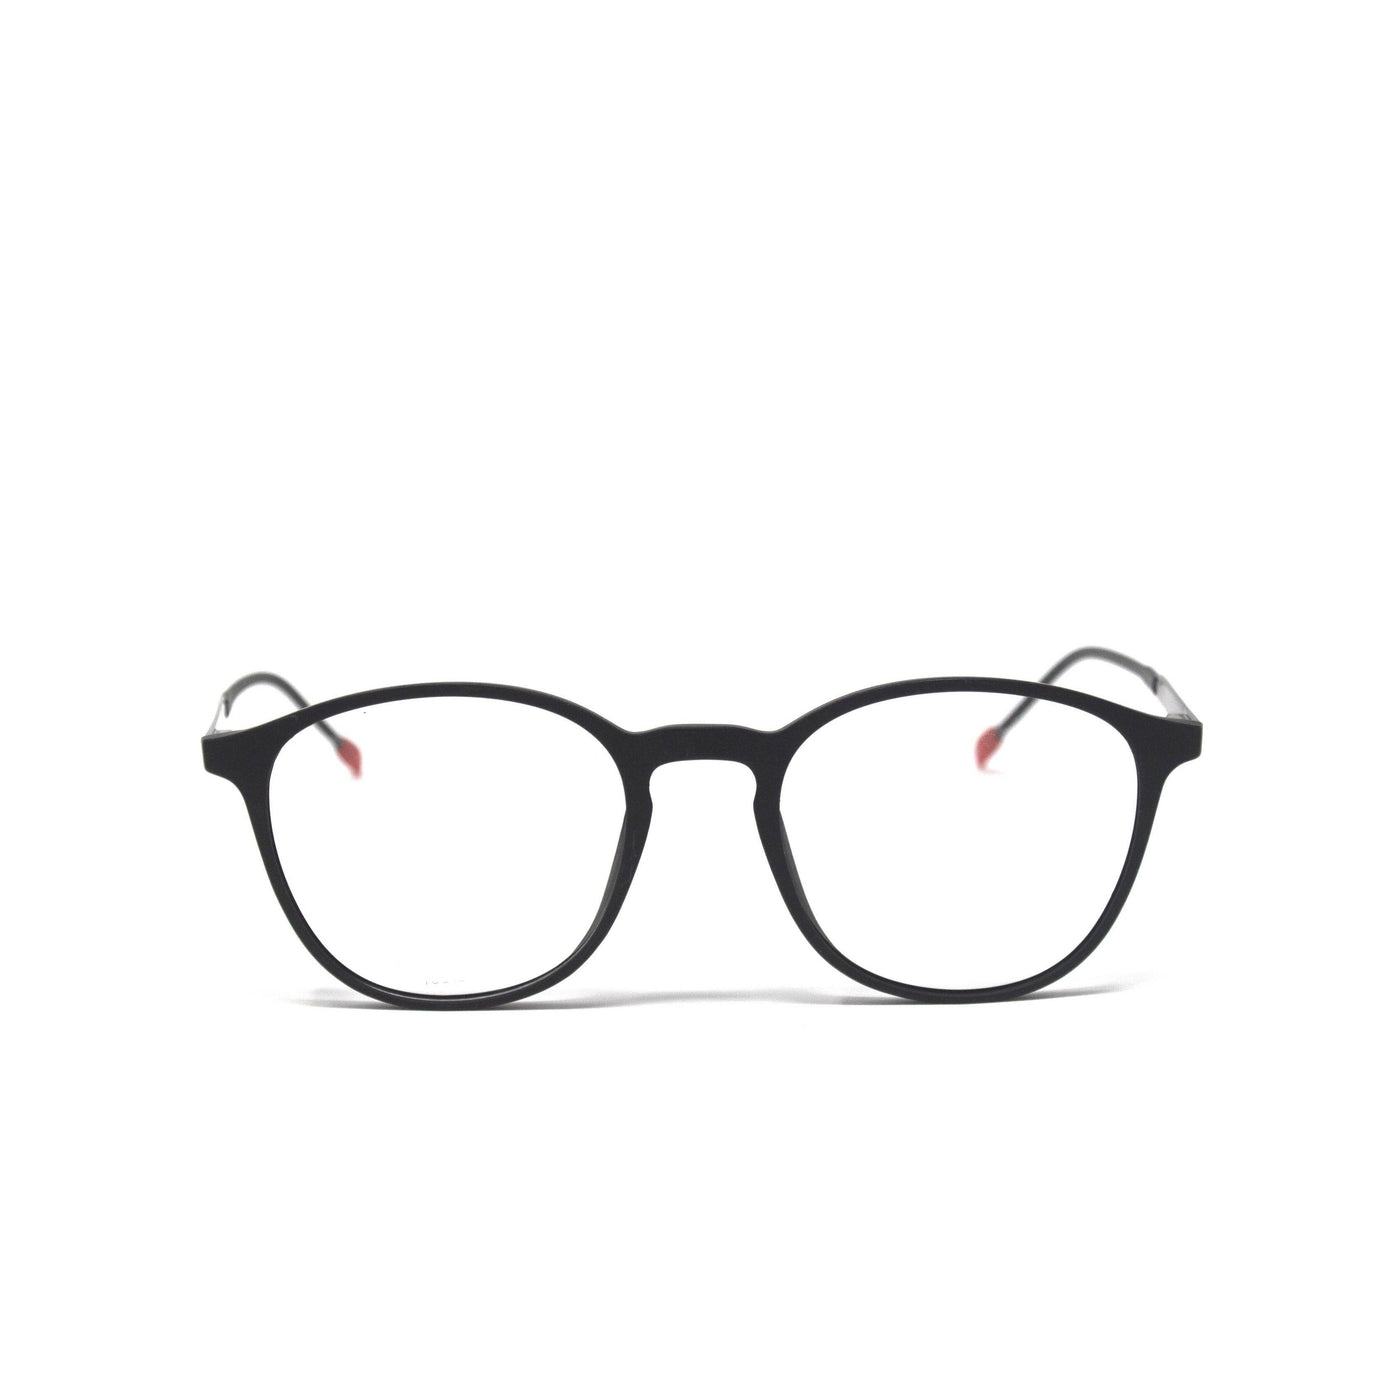 Oval black Color frames eyewear